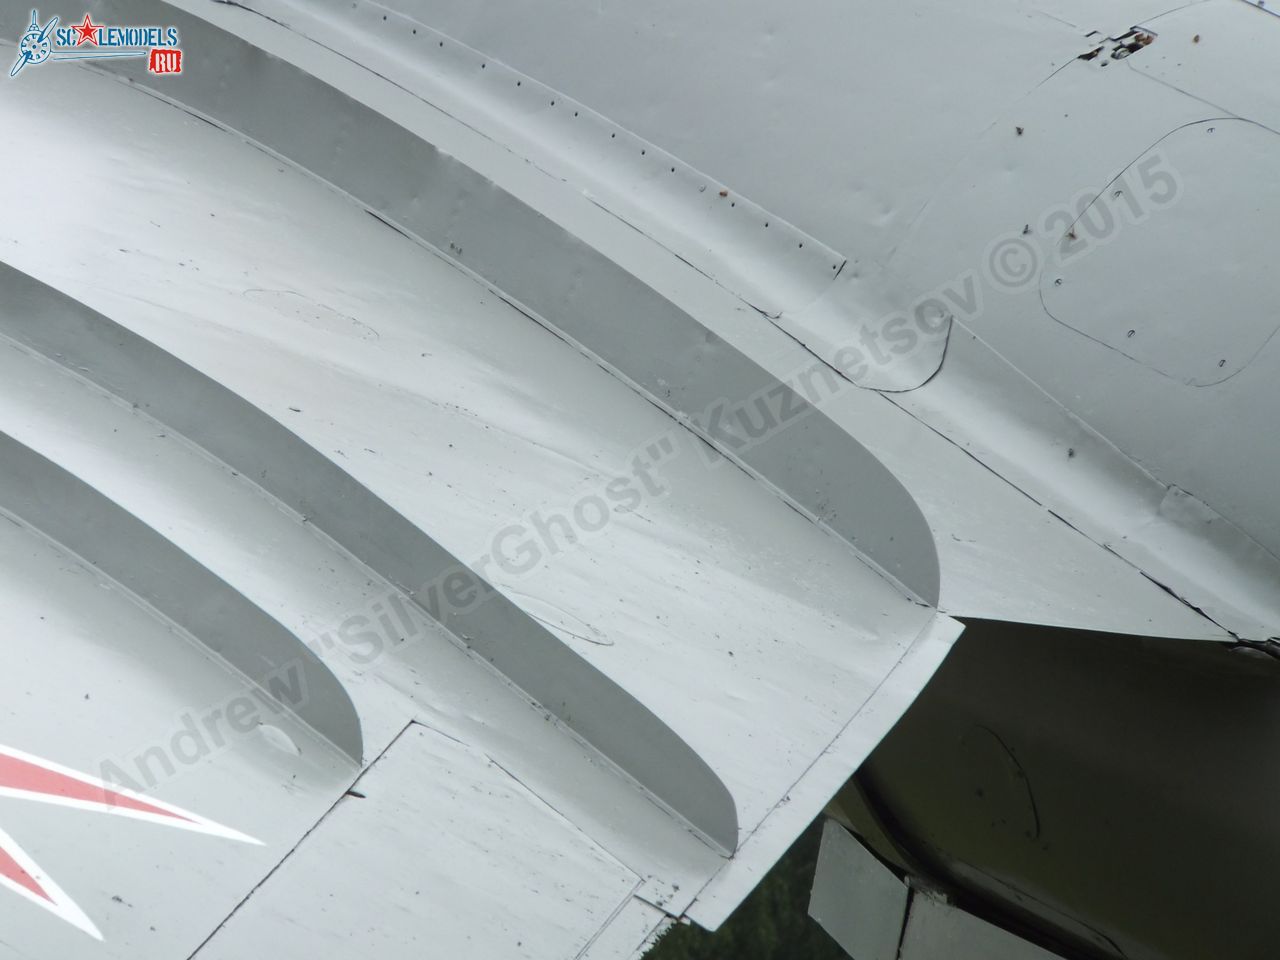 MiG-17_Tunoshna_0020.jpg